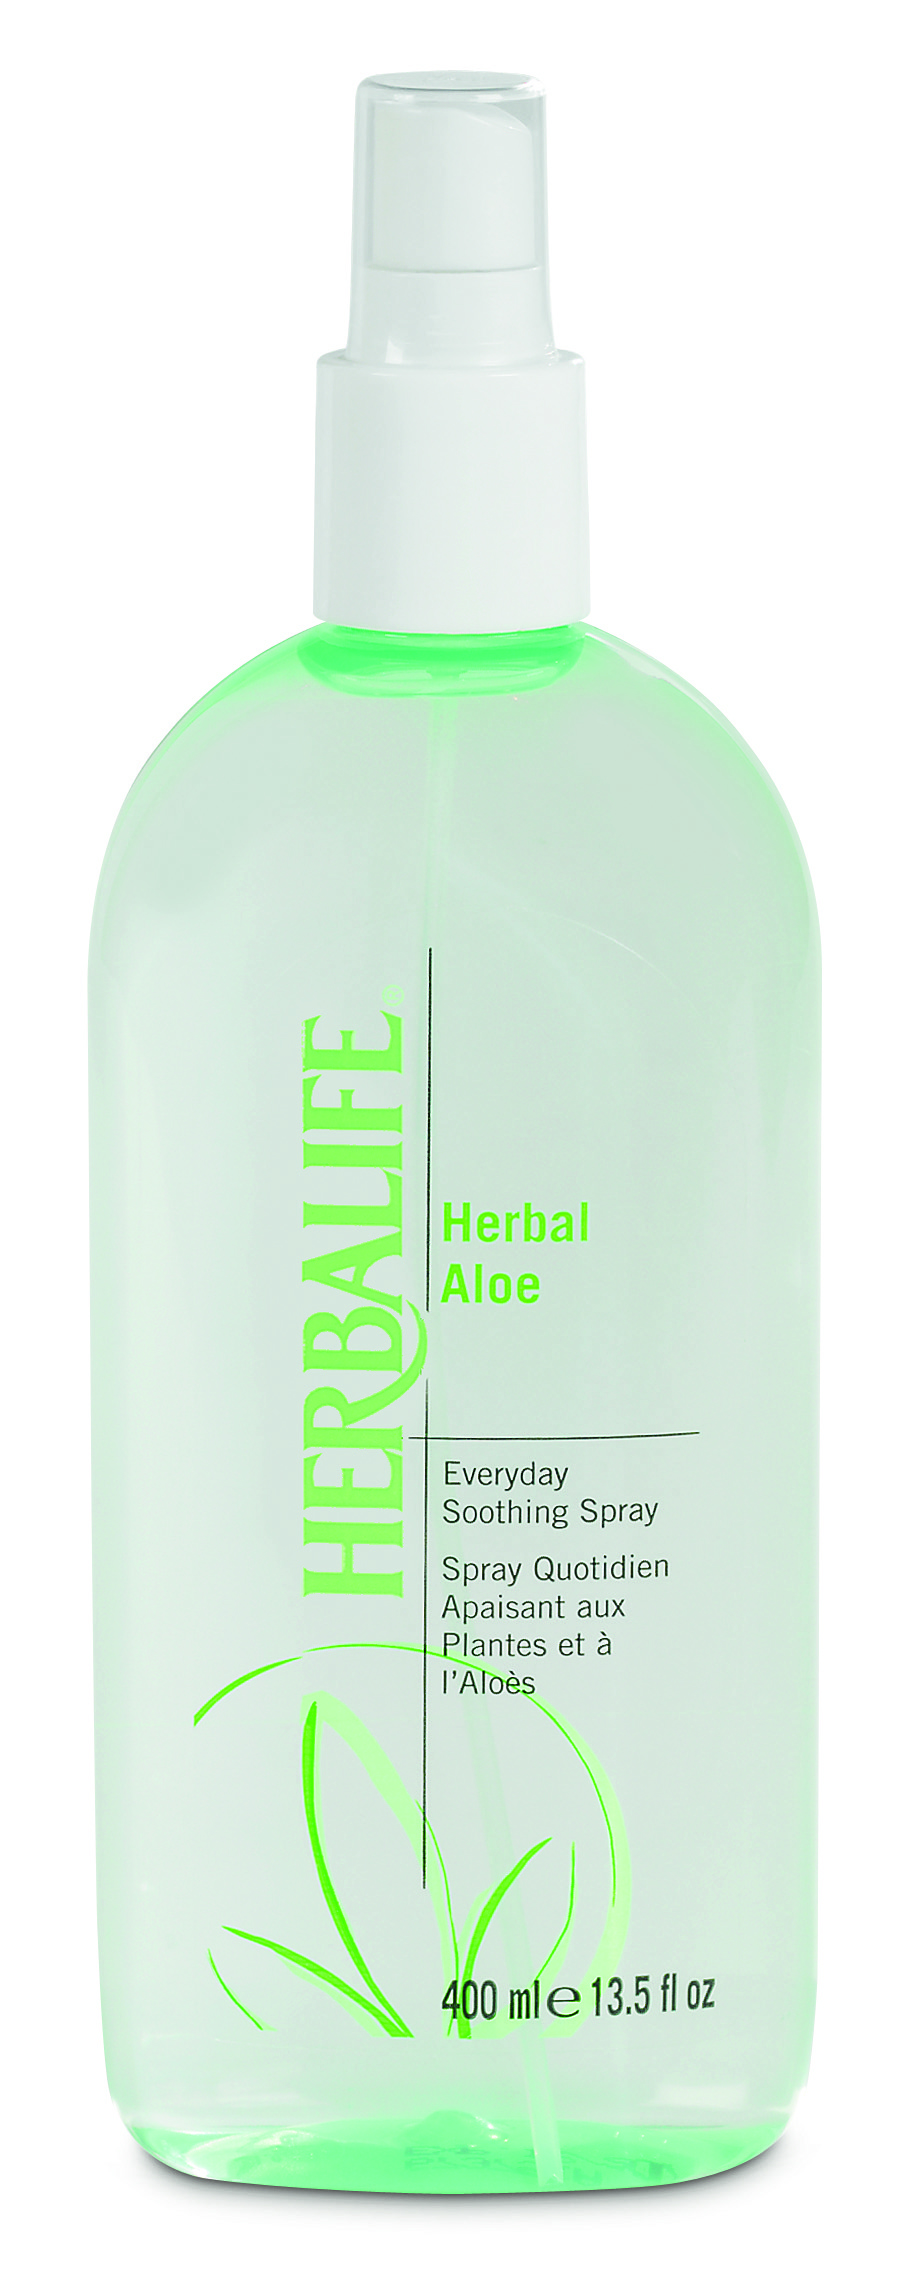 Herbalife soothing spray